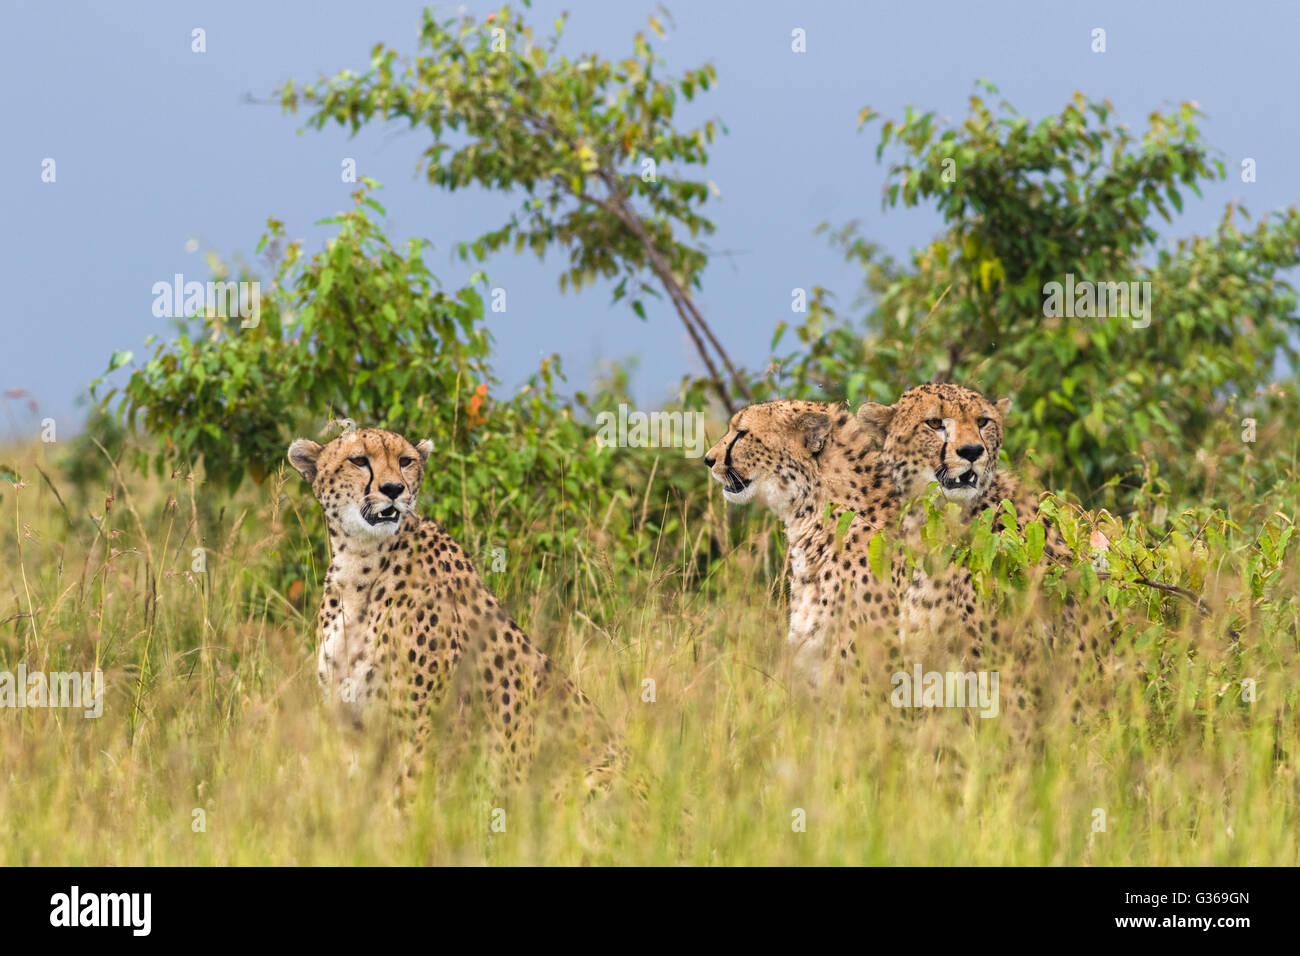 Drei Geparden zusammensitzen Gras umzusehen, wie sie jagen, zwei mit Blick auf Kamera, Masai Mara, Kenia Stockfoto